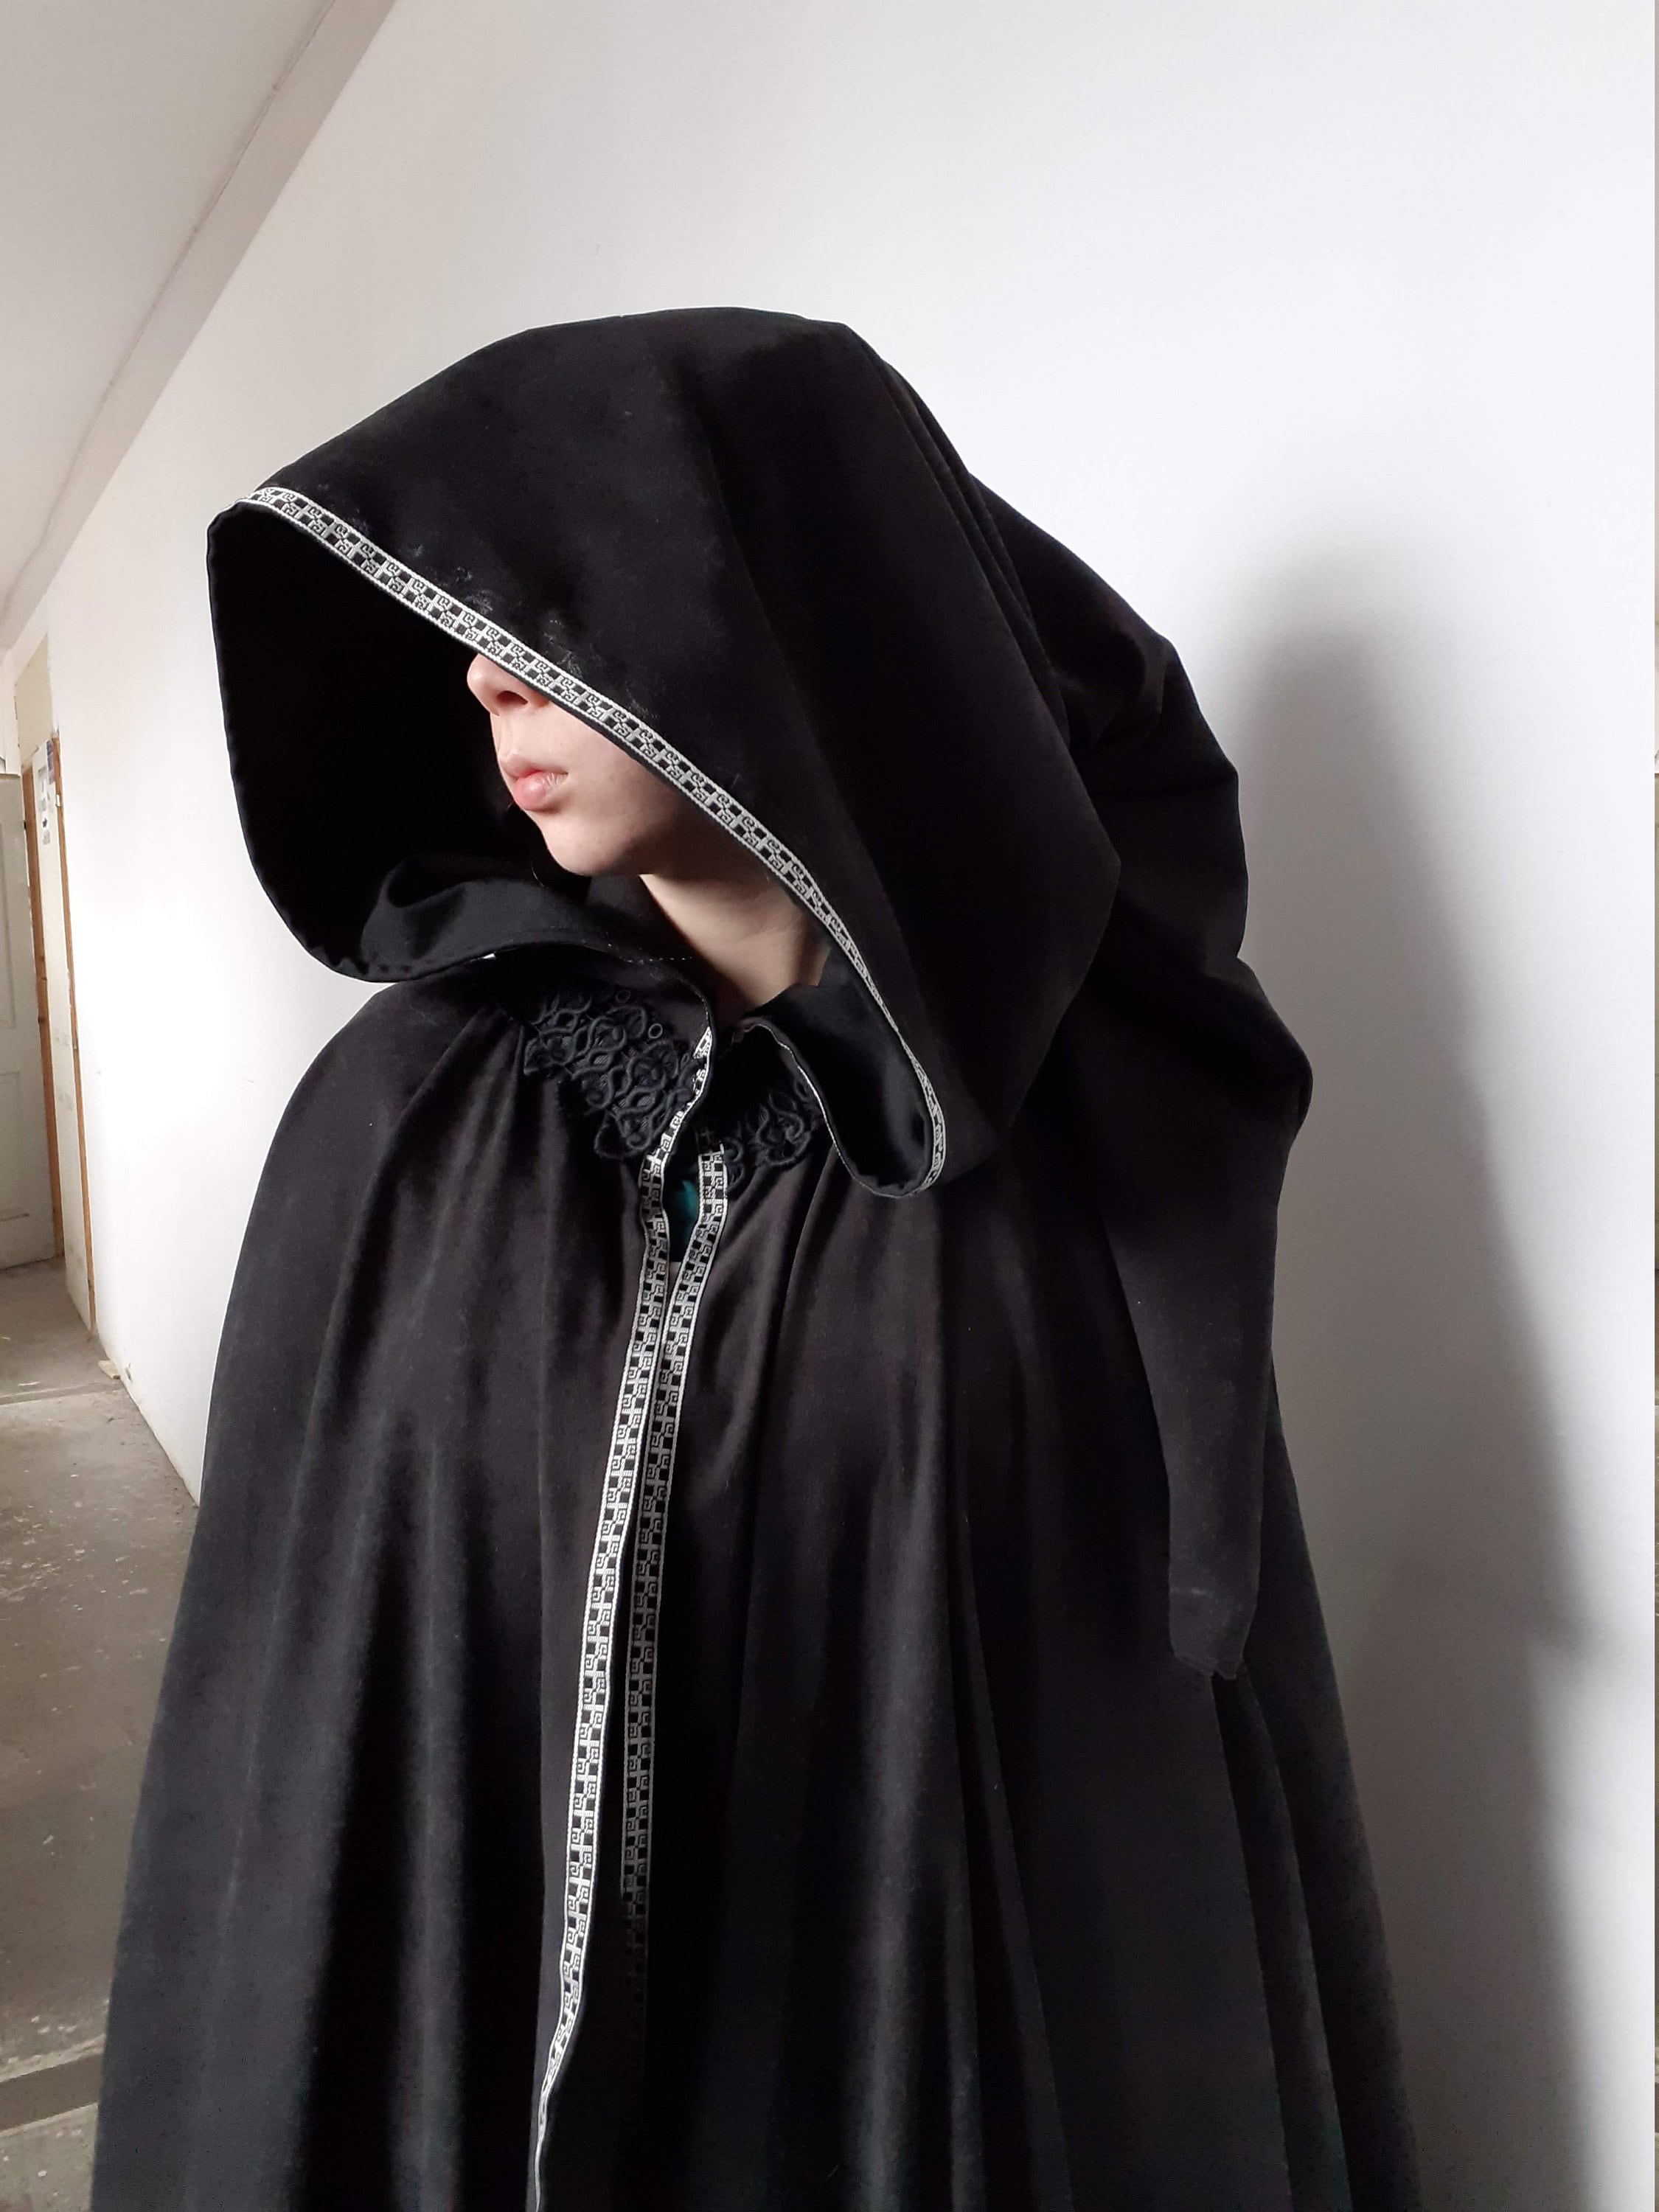 Capa medieval corta de dama modelo Heidi, color negro ⚔️ Tienda-Medieval